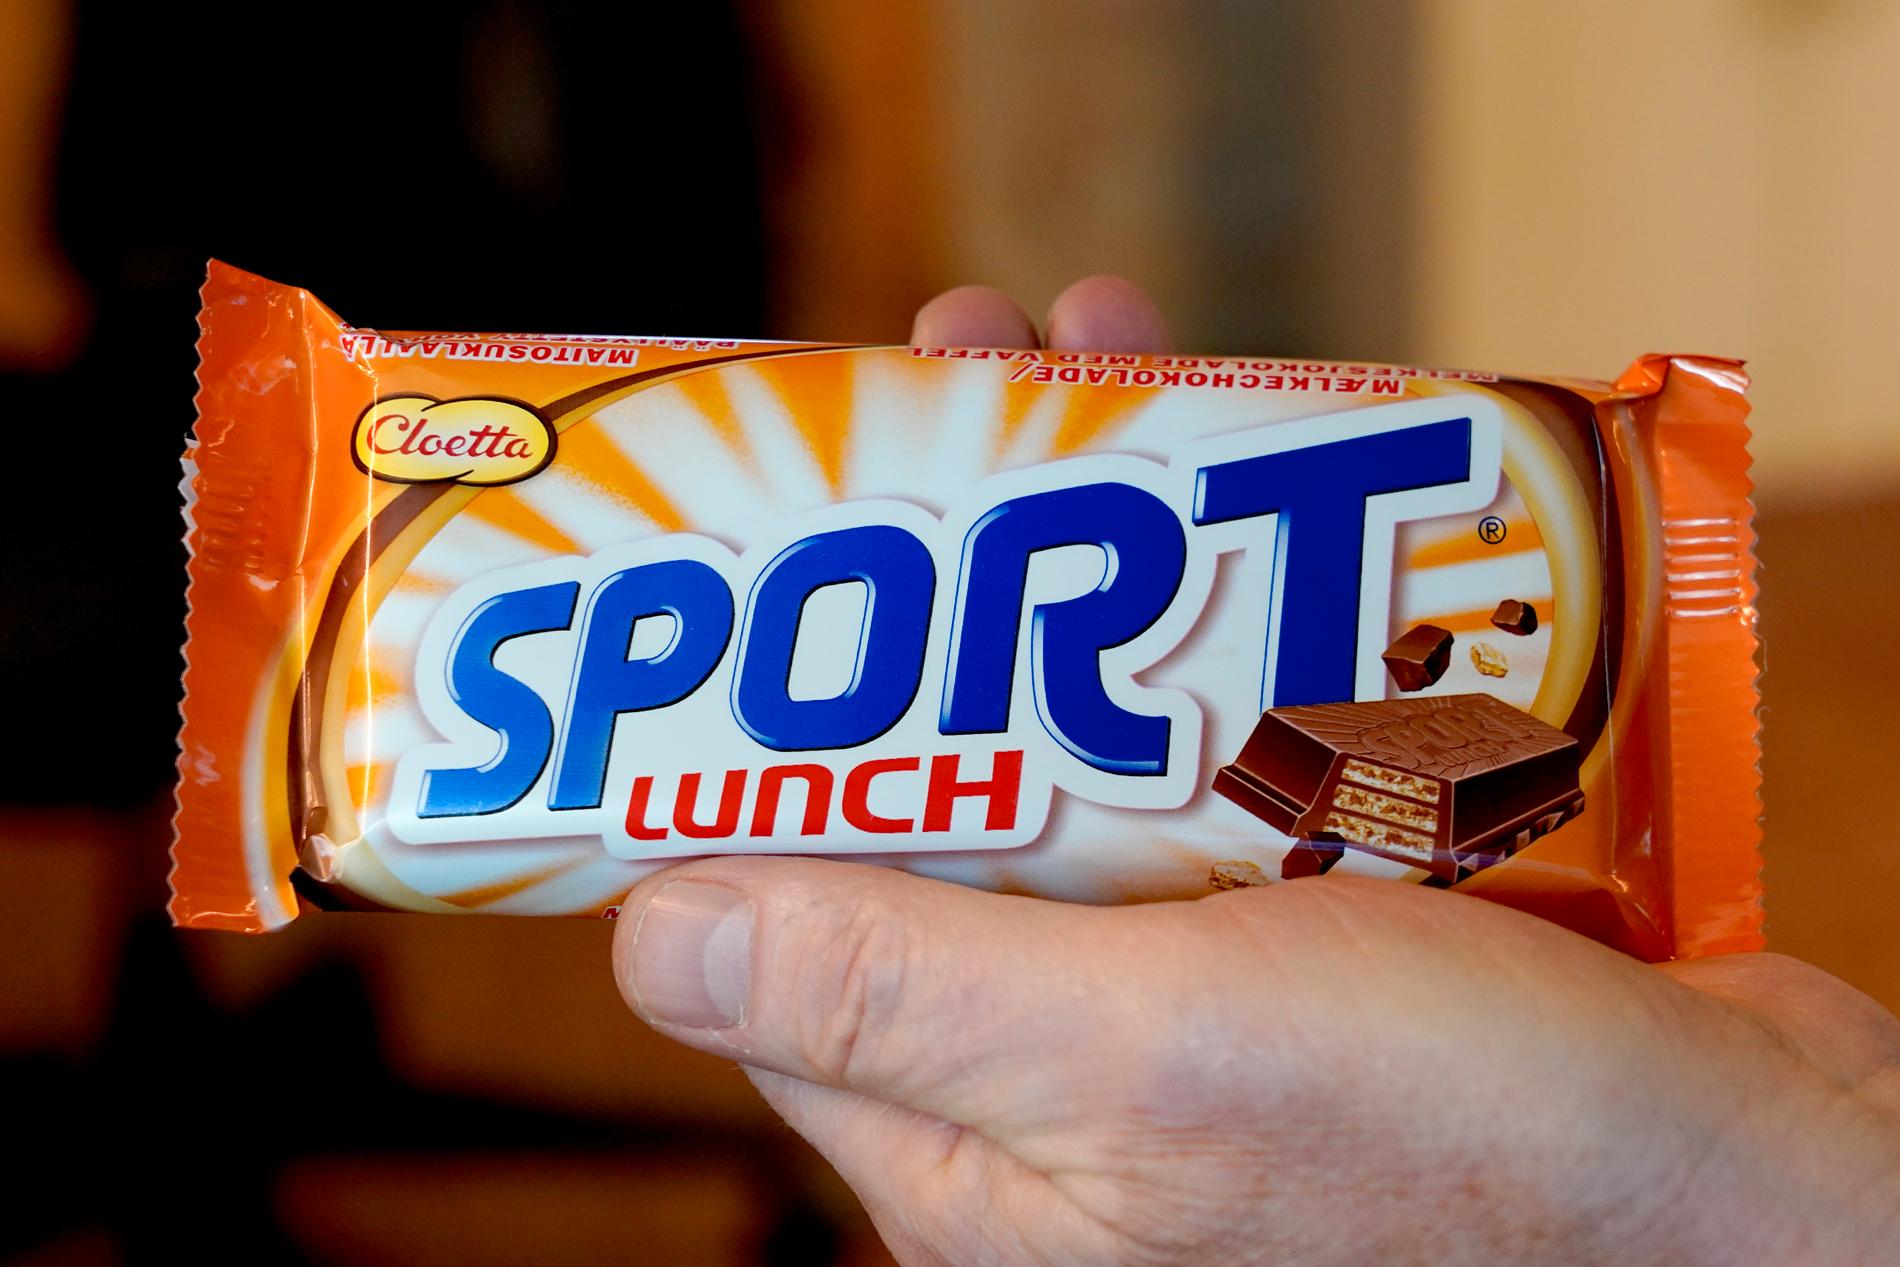 Cloetta stopper blant annet sjokoladen Sportlunch da de mistenker at det er problemer med produktet. 